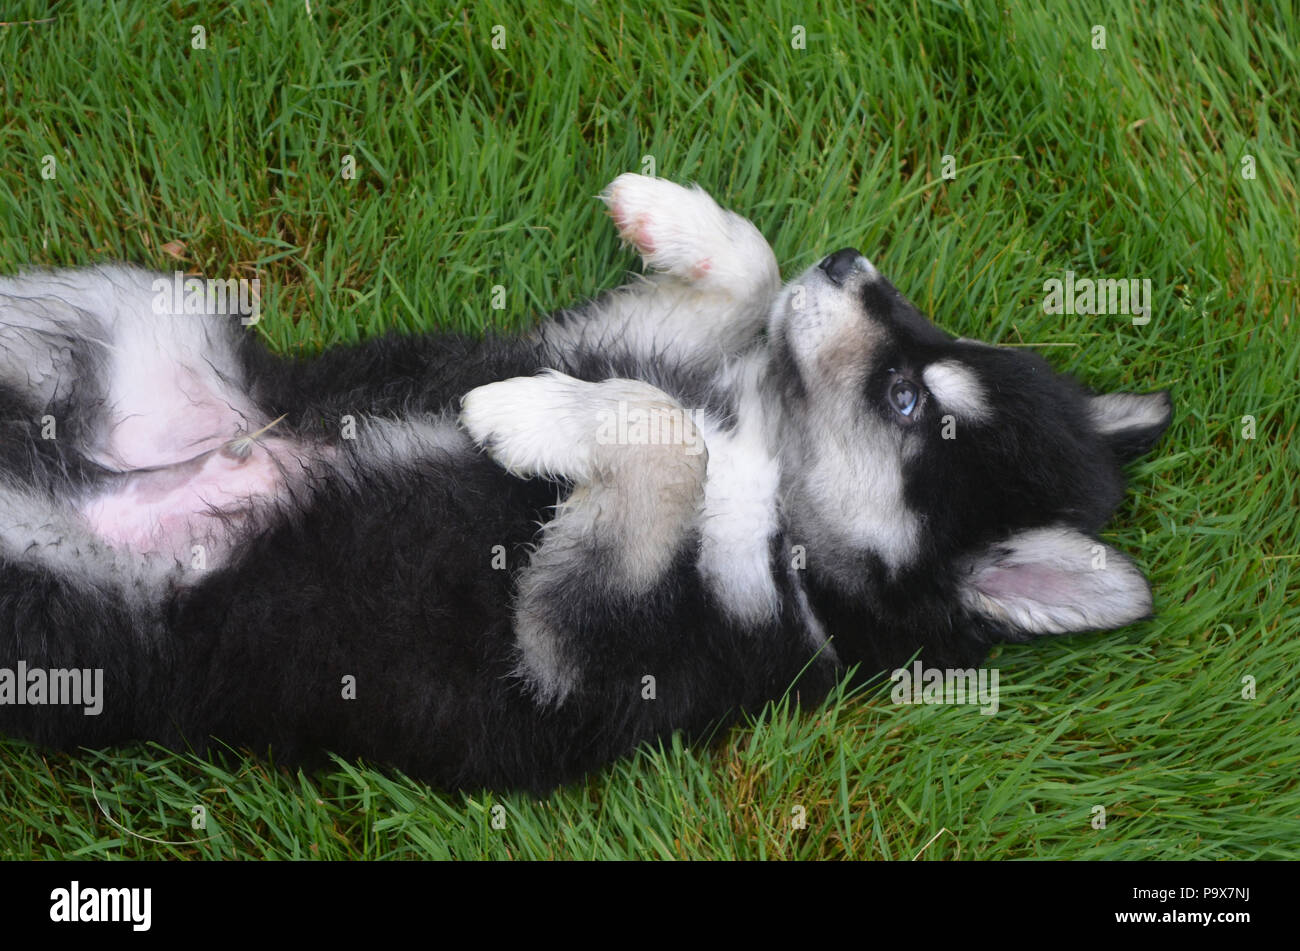 Adorable baby maschio cucciolo alusky recante sulla sua schiena e mostrando sottomissione. Foto Stock